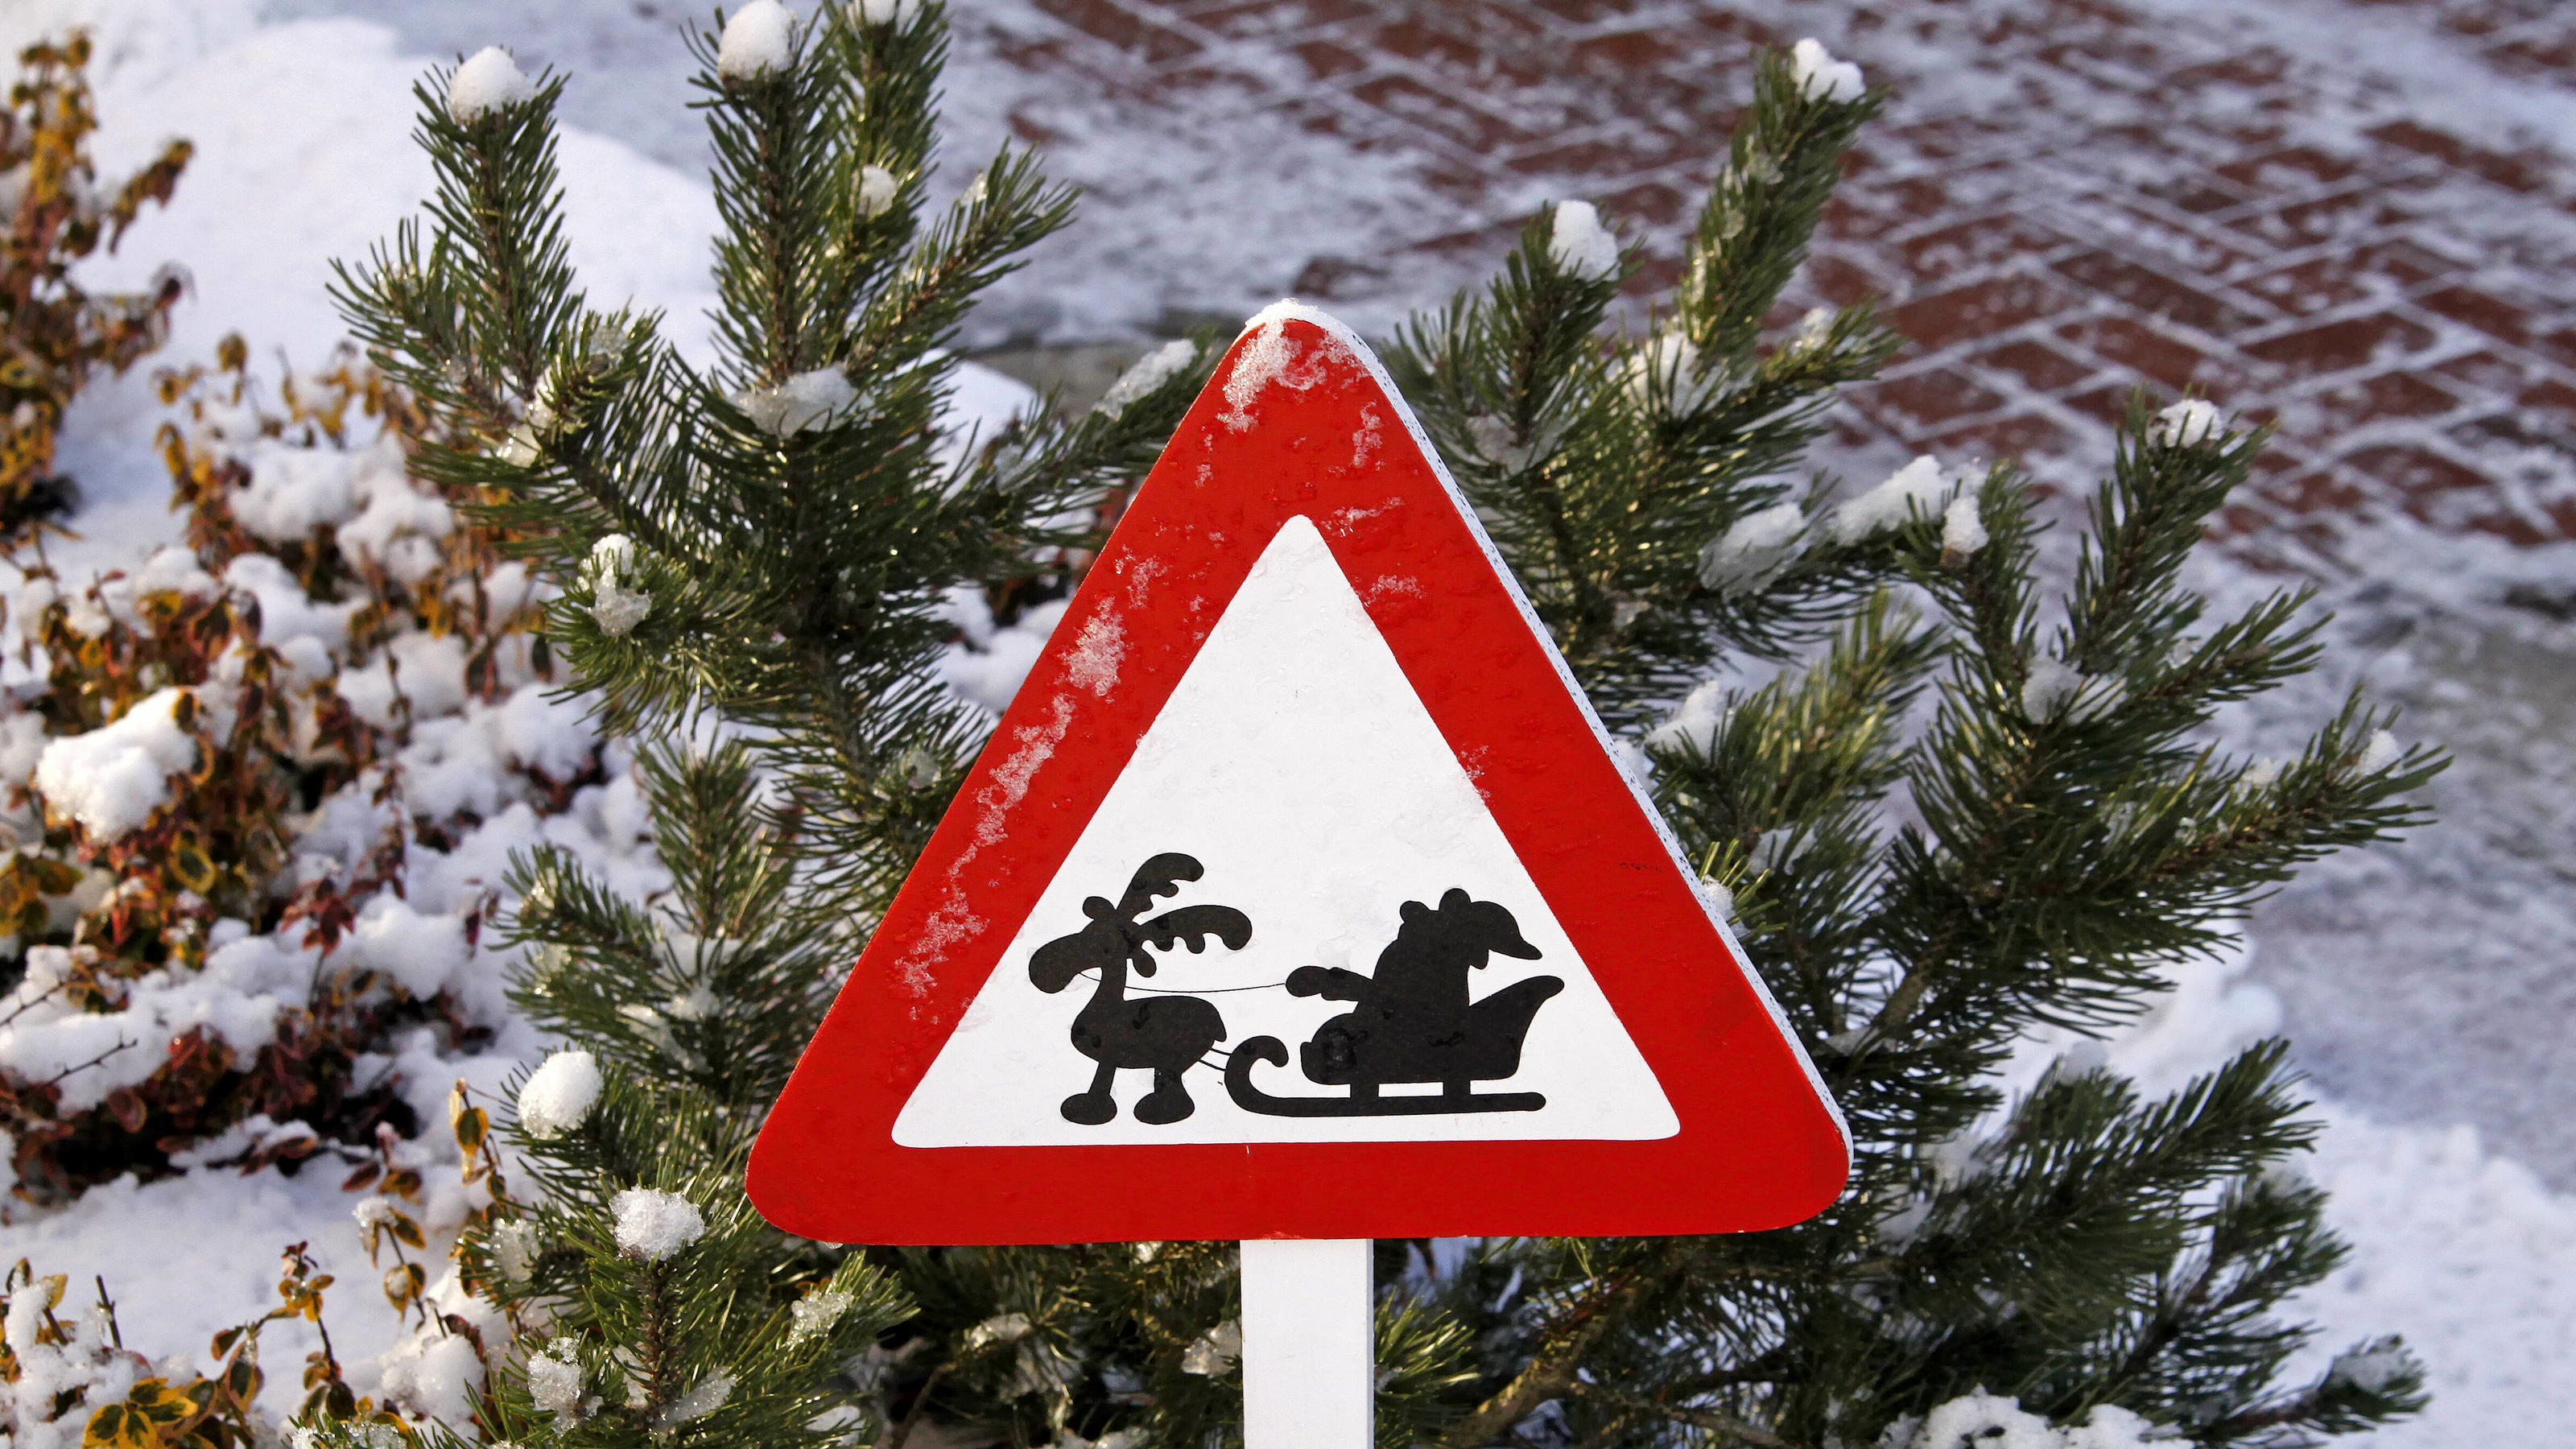 Wetterprognose Fur Den Winter 2021 2022 Gibt Es Schnee Zu Weihnachten Und Silvester